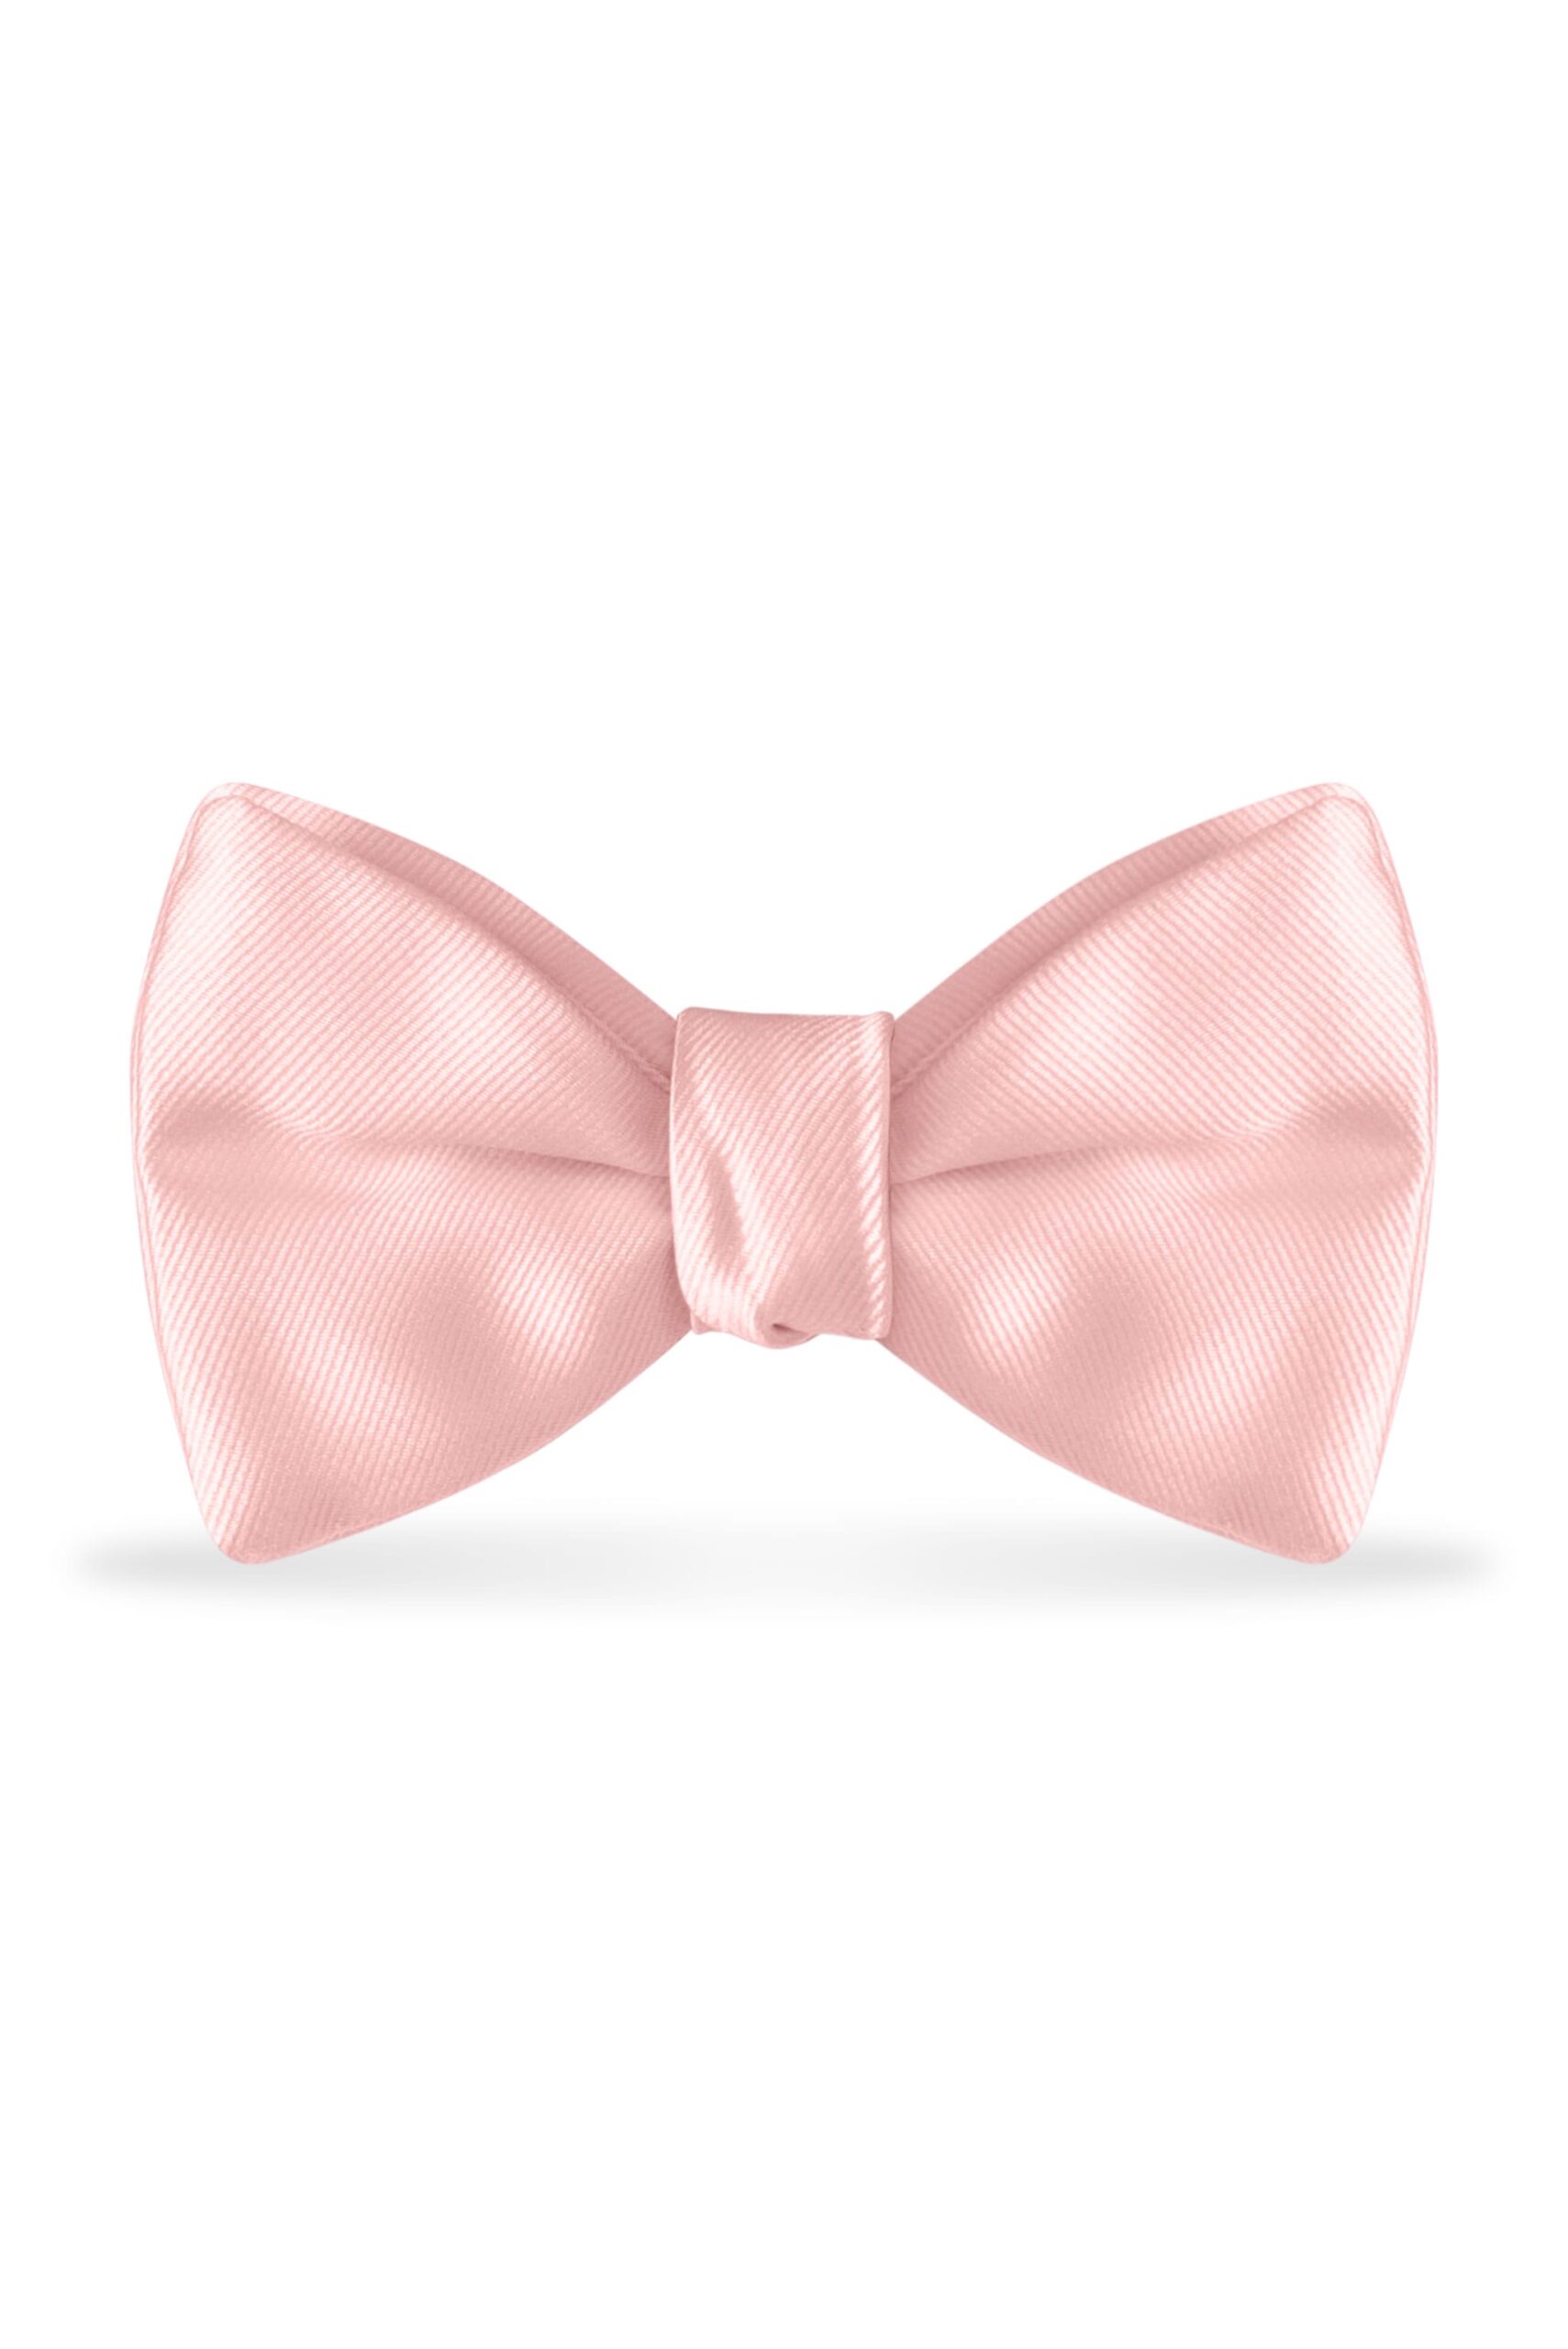 Solid Rose Petal Bow Tie 1